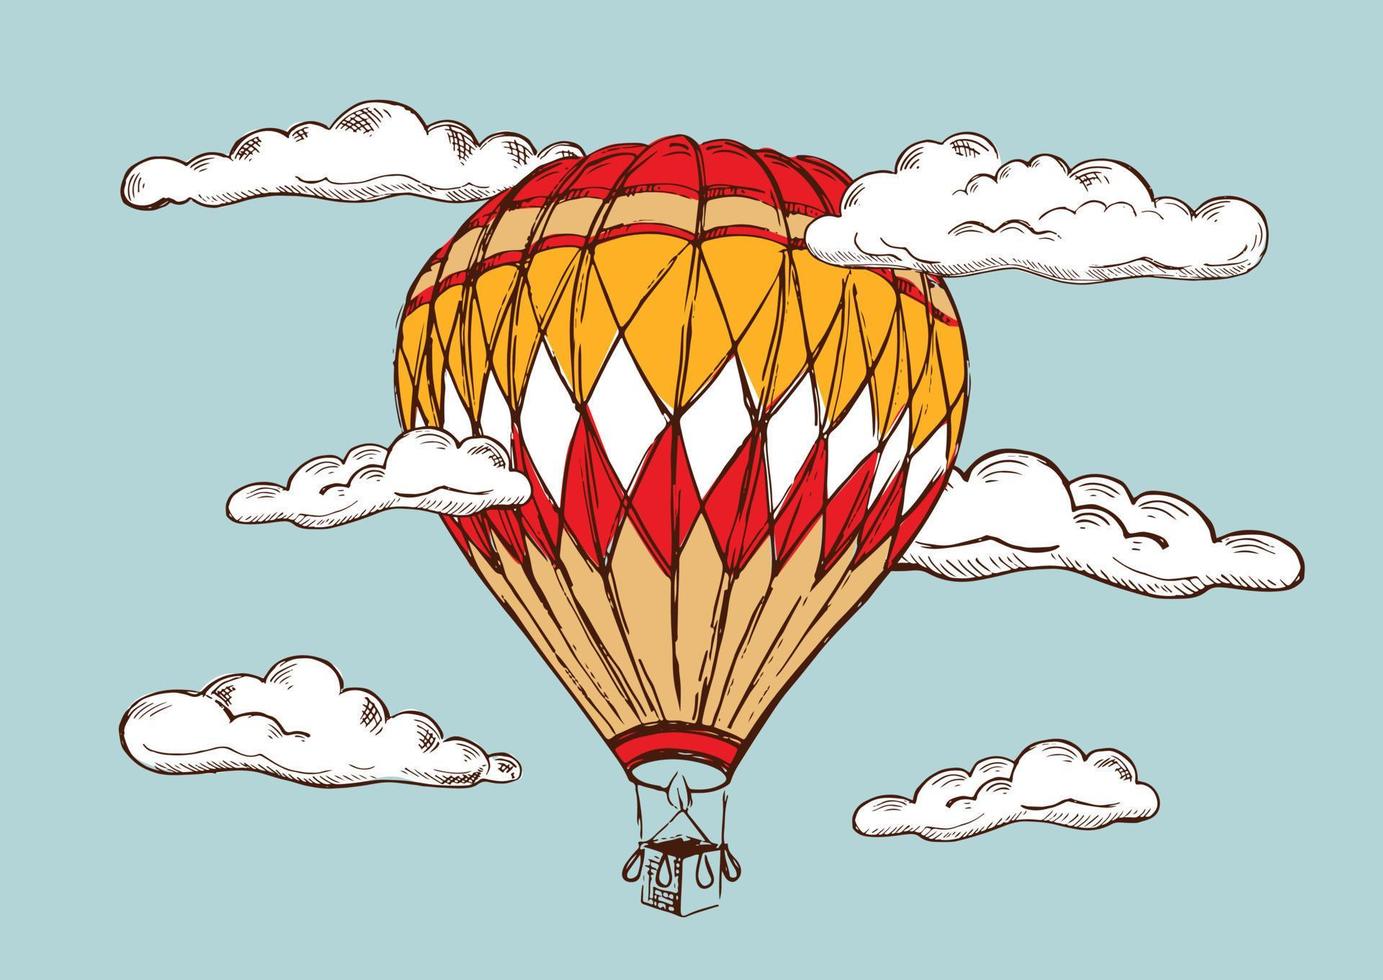 globos aerostáticos volando. ilustración dibujada a mano. vector. vector